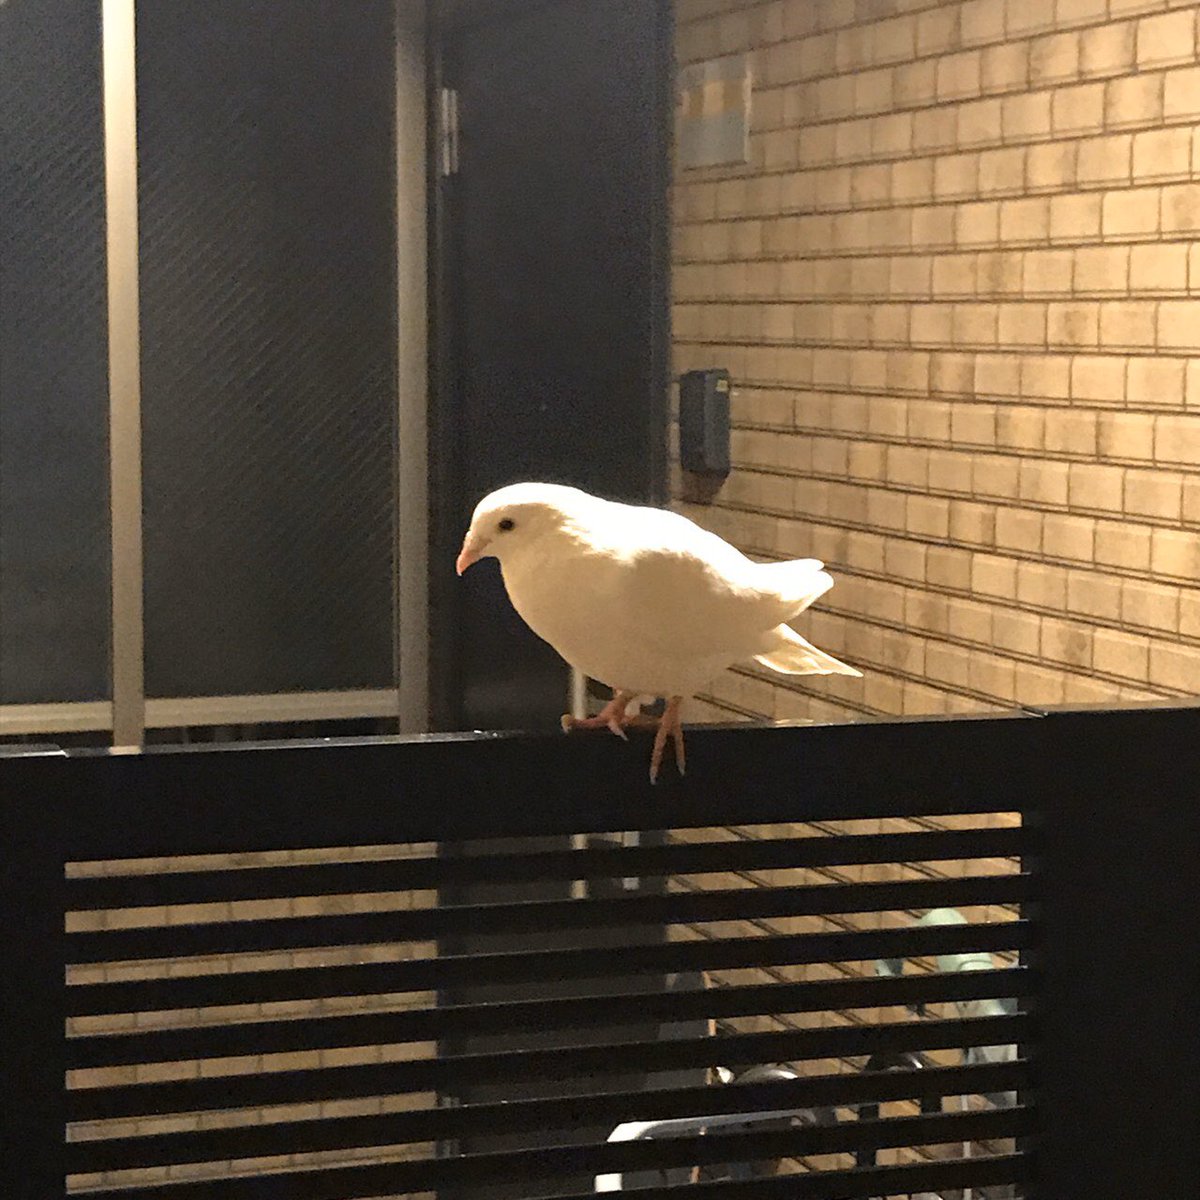 ことりのおなか うちのマンションに迷子 の白鳩がいます 福岡市東区 捕まえられないので とりあえずうちのインコのご飯と水を近くに置いています 足輪はない 模様 うちの鳥かも という方はdmください 拡散に協力頂ける方もよろしくお願いします